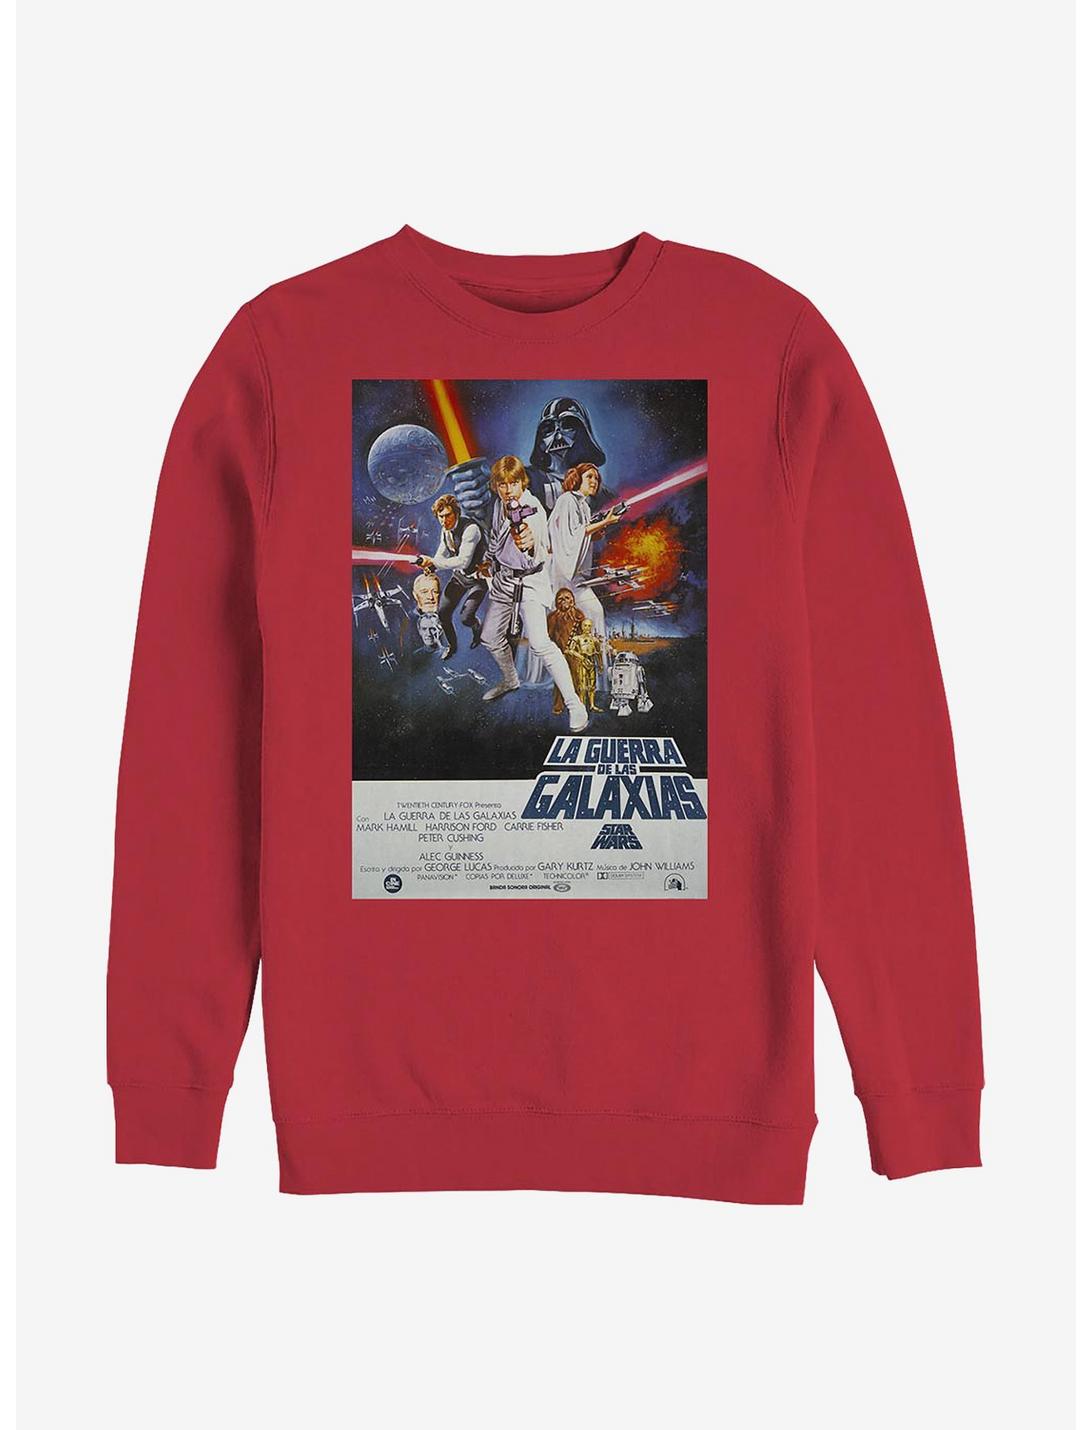 Star Wars Episode IV A New Hope La Guerra De Las Galaxias Poster Sweatshirt, RED, hi-res